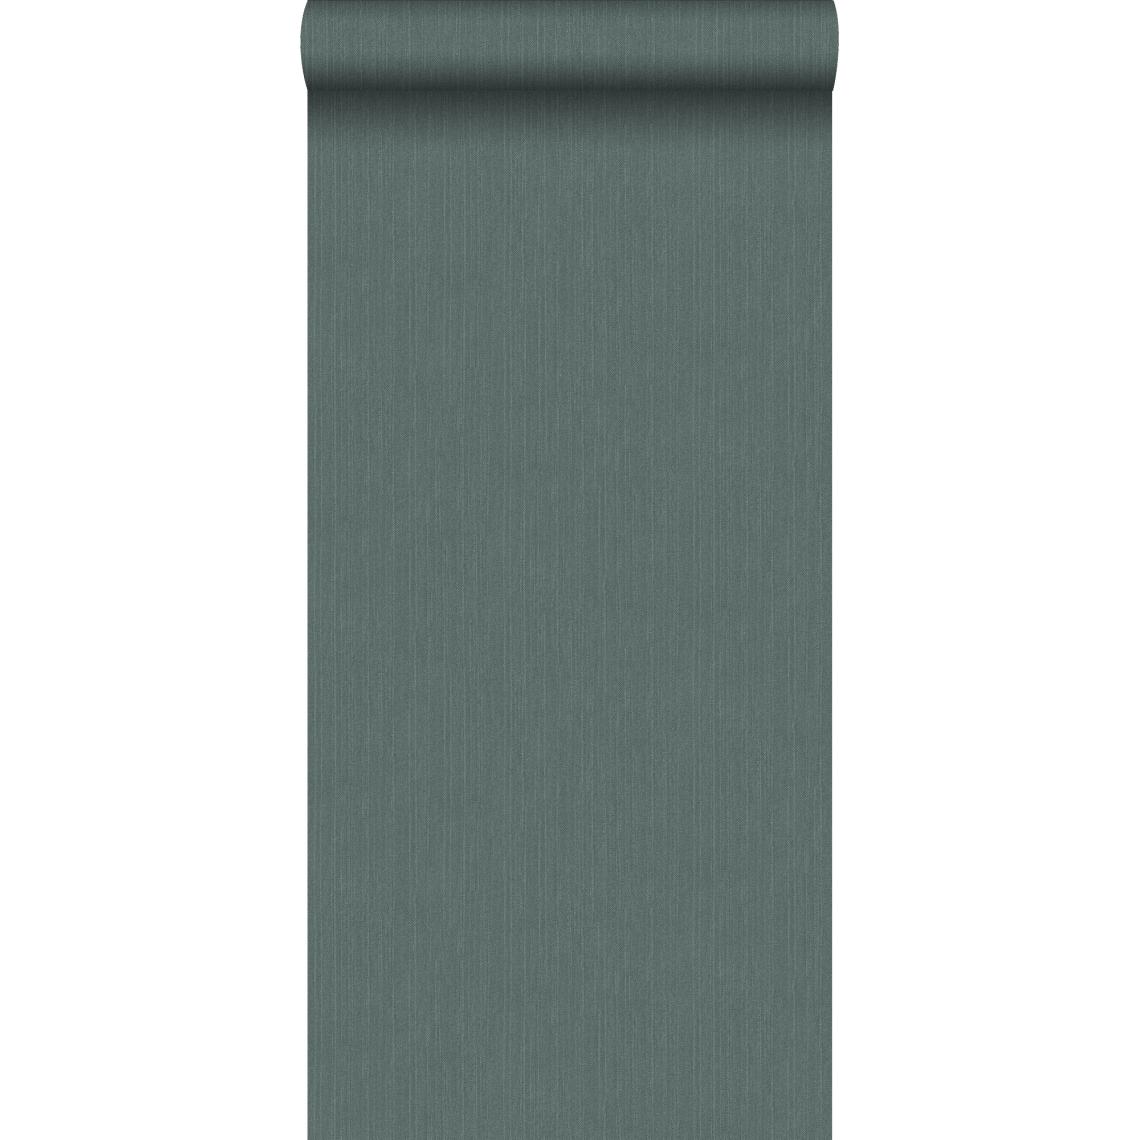 ESTAhome - ESTAhome papier peint uni avec structure en denim jeans vert grisé - 148706 - 0.53 x 10.05 m - Papier peint